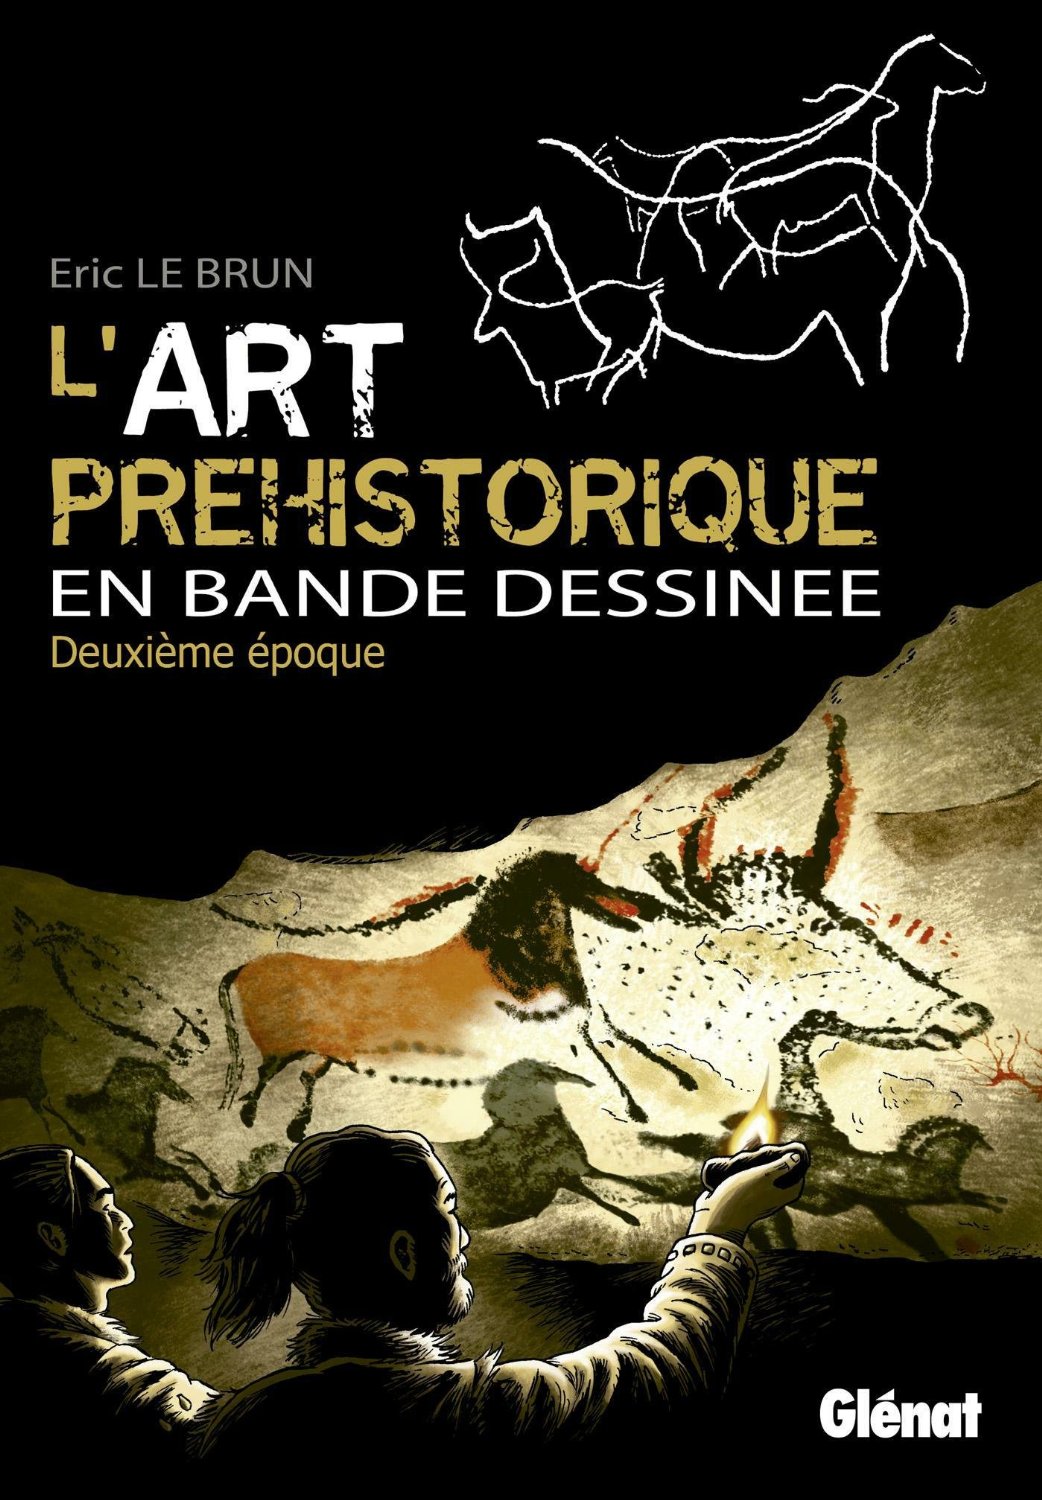 L'art préhistorique en bande dessinée. Deuxième époque, 2013, 80 p.